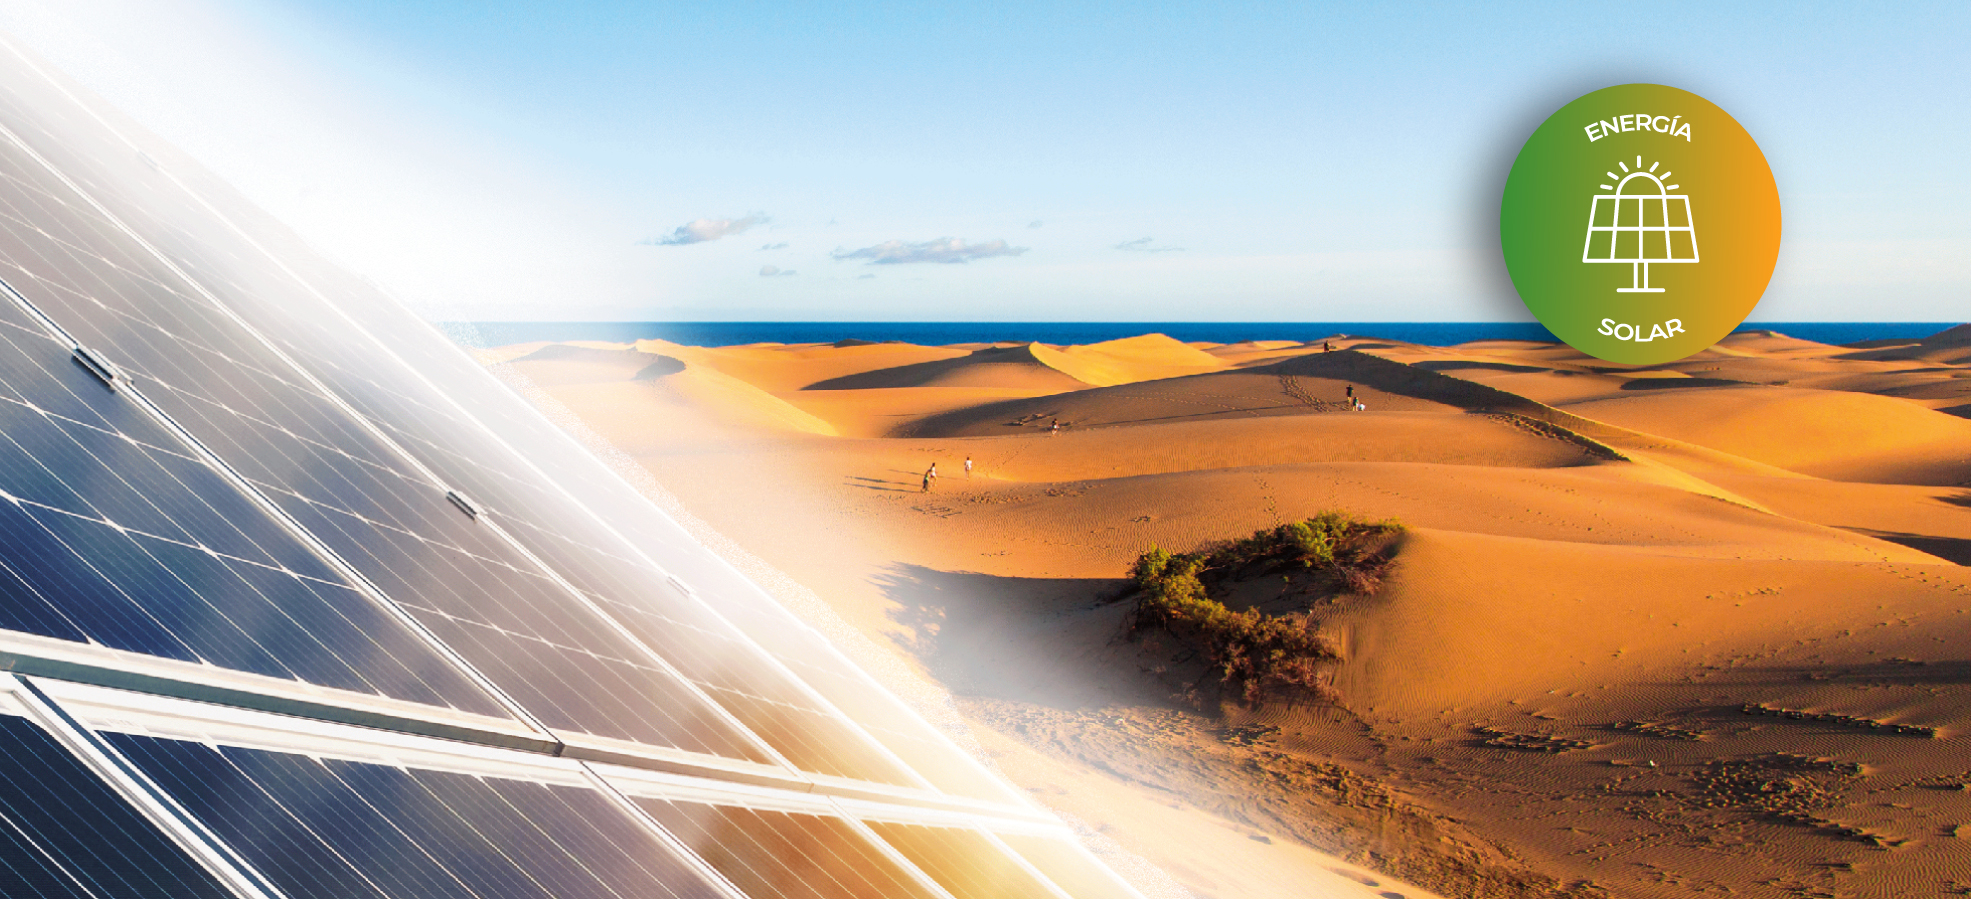 Energía fotovoltaica en Canarias